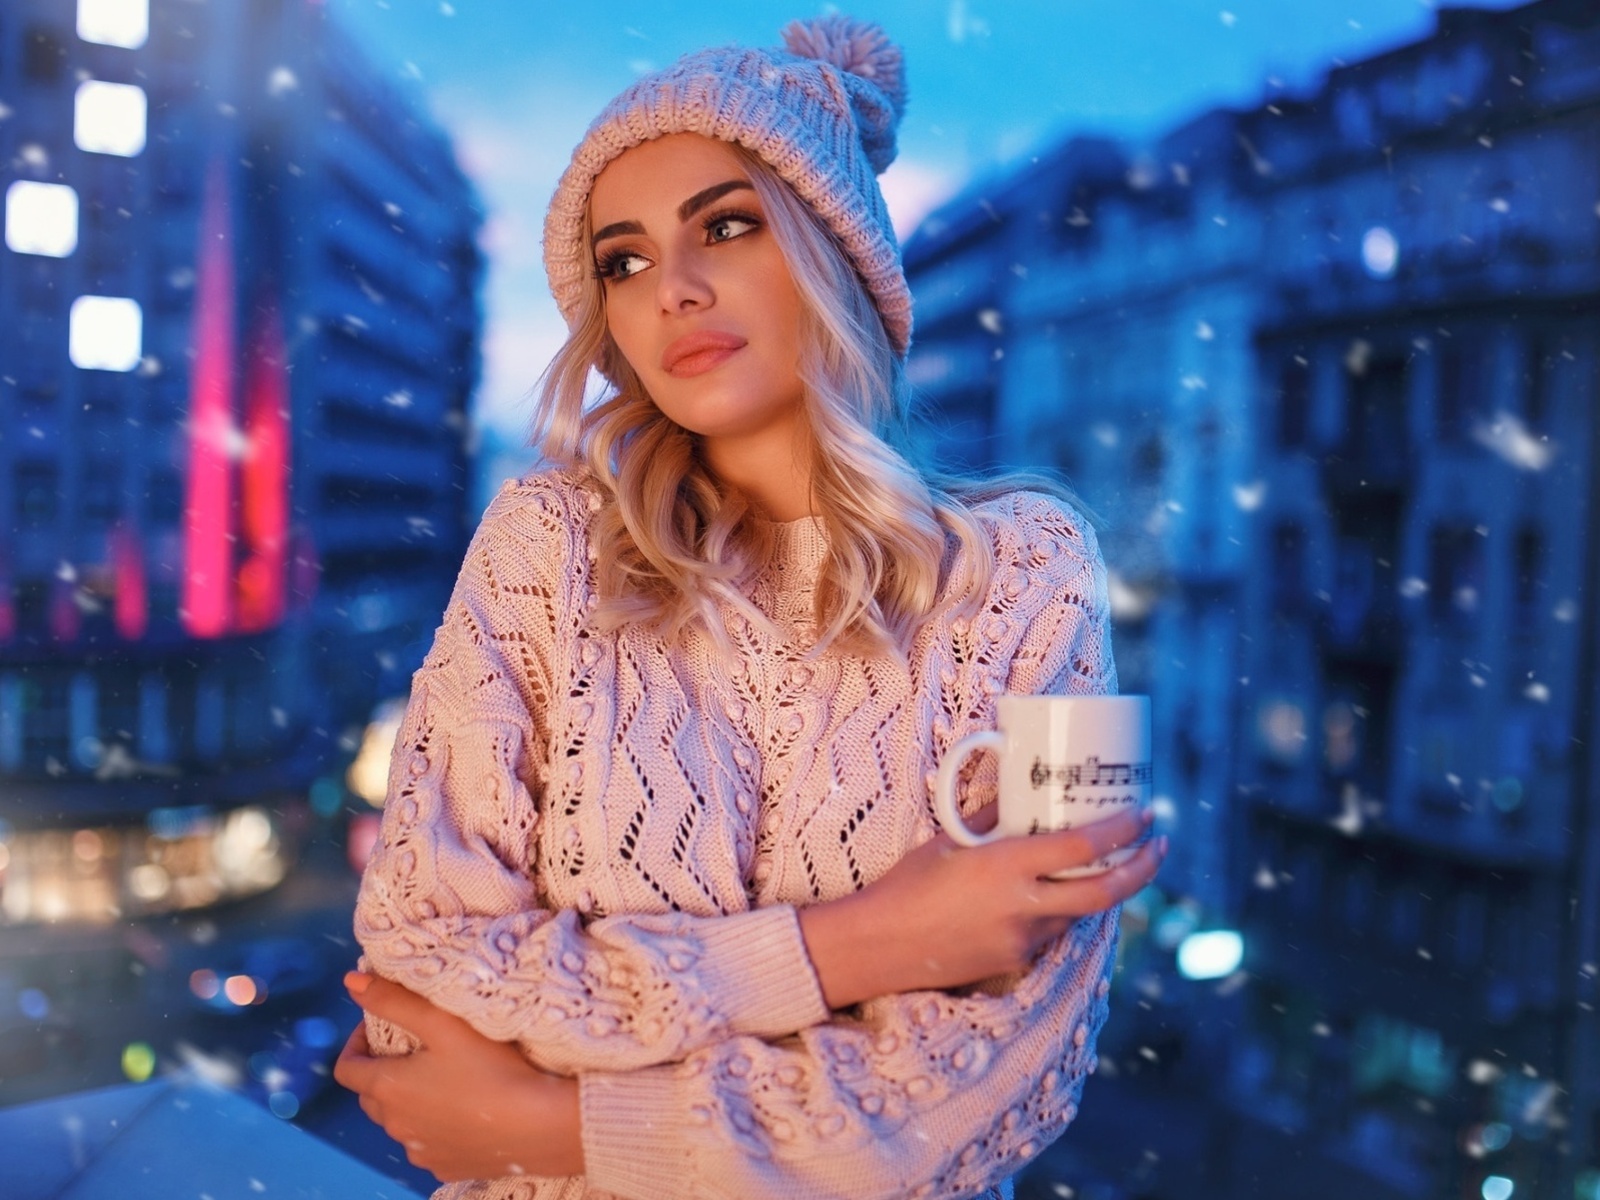 Winter stylish woman screenshot #1 1600x1200